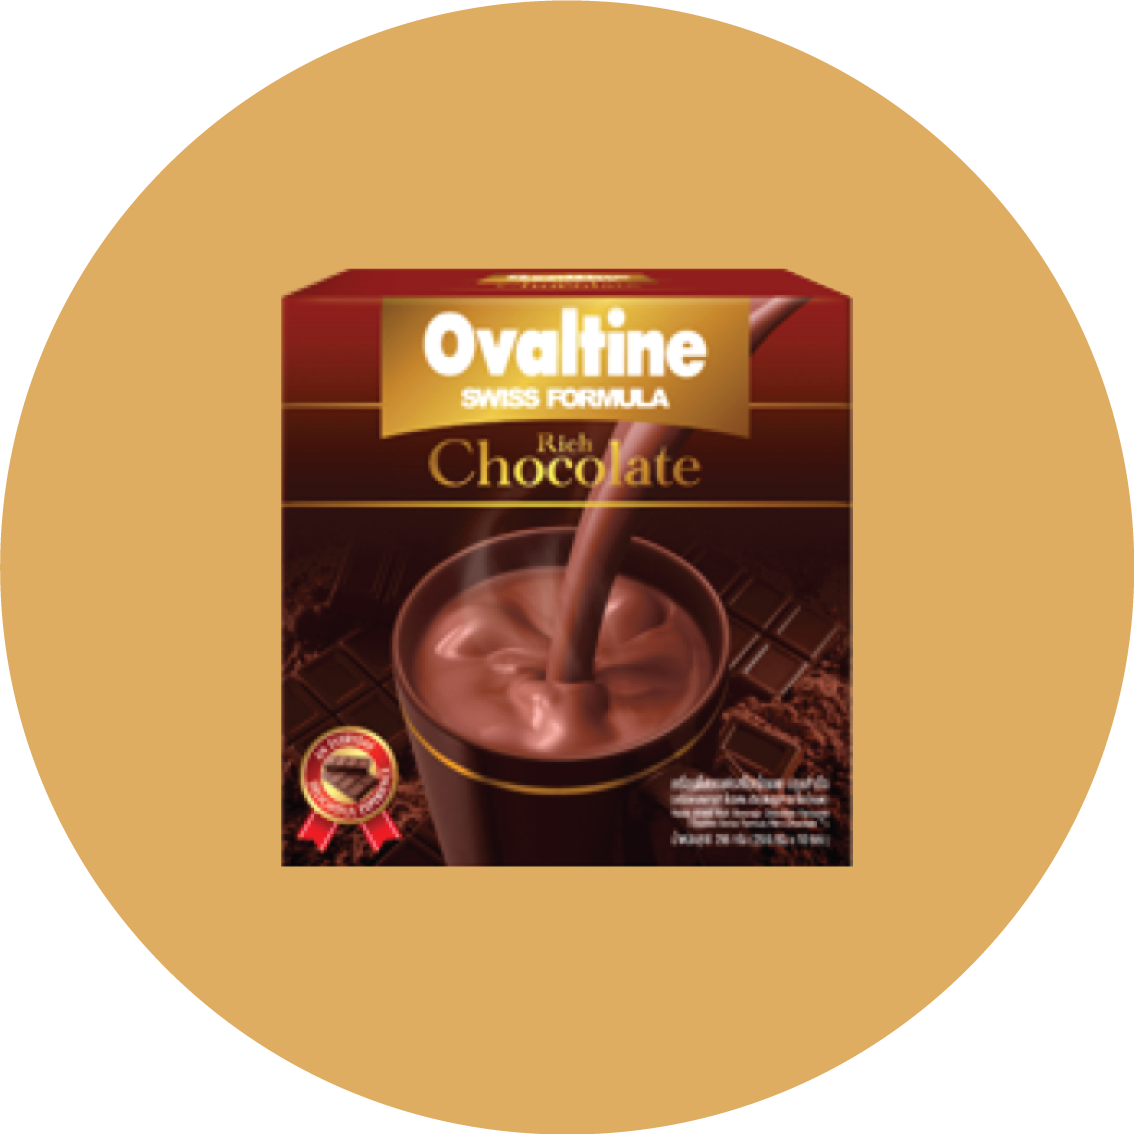 Ovaltine swiss rich chocolate โอวัลติน สวิส ริช ช็อกโกแลต หอม เข้มข้น กลมกล่อม อร่อยลงตัวด้วยความเข้มข้นของโกโก้และช็อกโกแลตแท้คุณภาพดี ให้คุณได้ดื่มด่ำรสสัมผัสเข้มข้นจากช็อกโกแลตที่จะทำให้ทุกช่วงเวลาเป็นช่วงเวลาแห่งความสุข แก้วโปรดของคนรักช็อกโกแลต โอวัลติน สวิส ริช ช็อกโกแลต